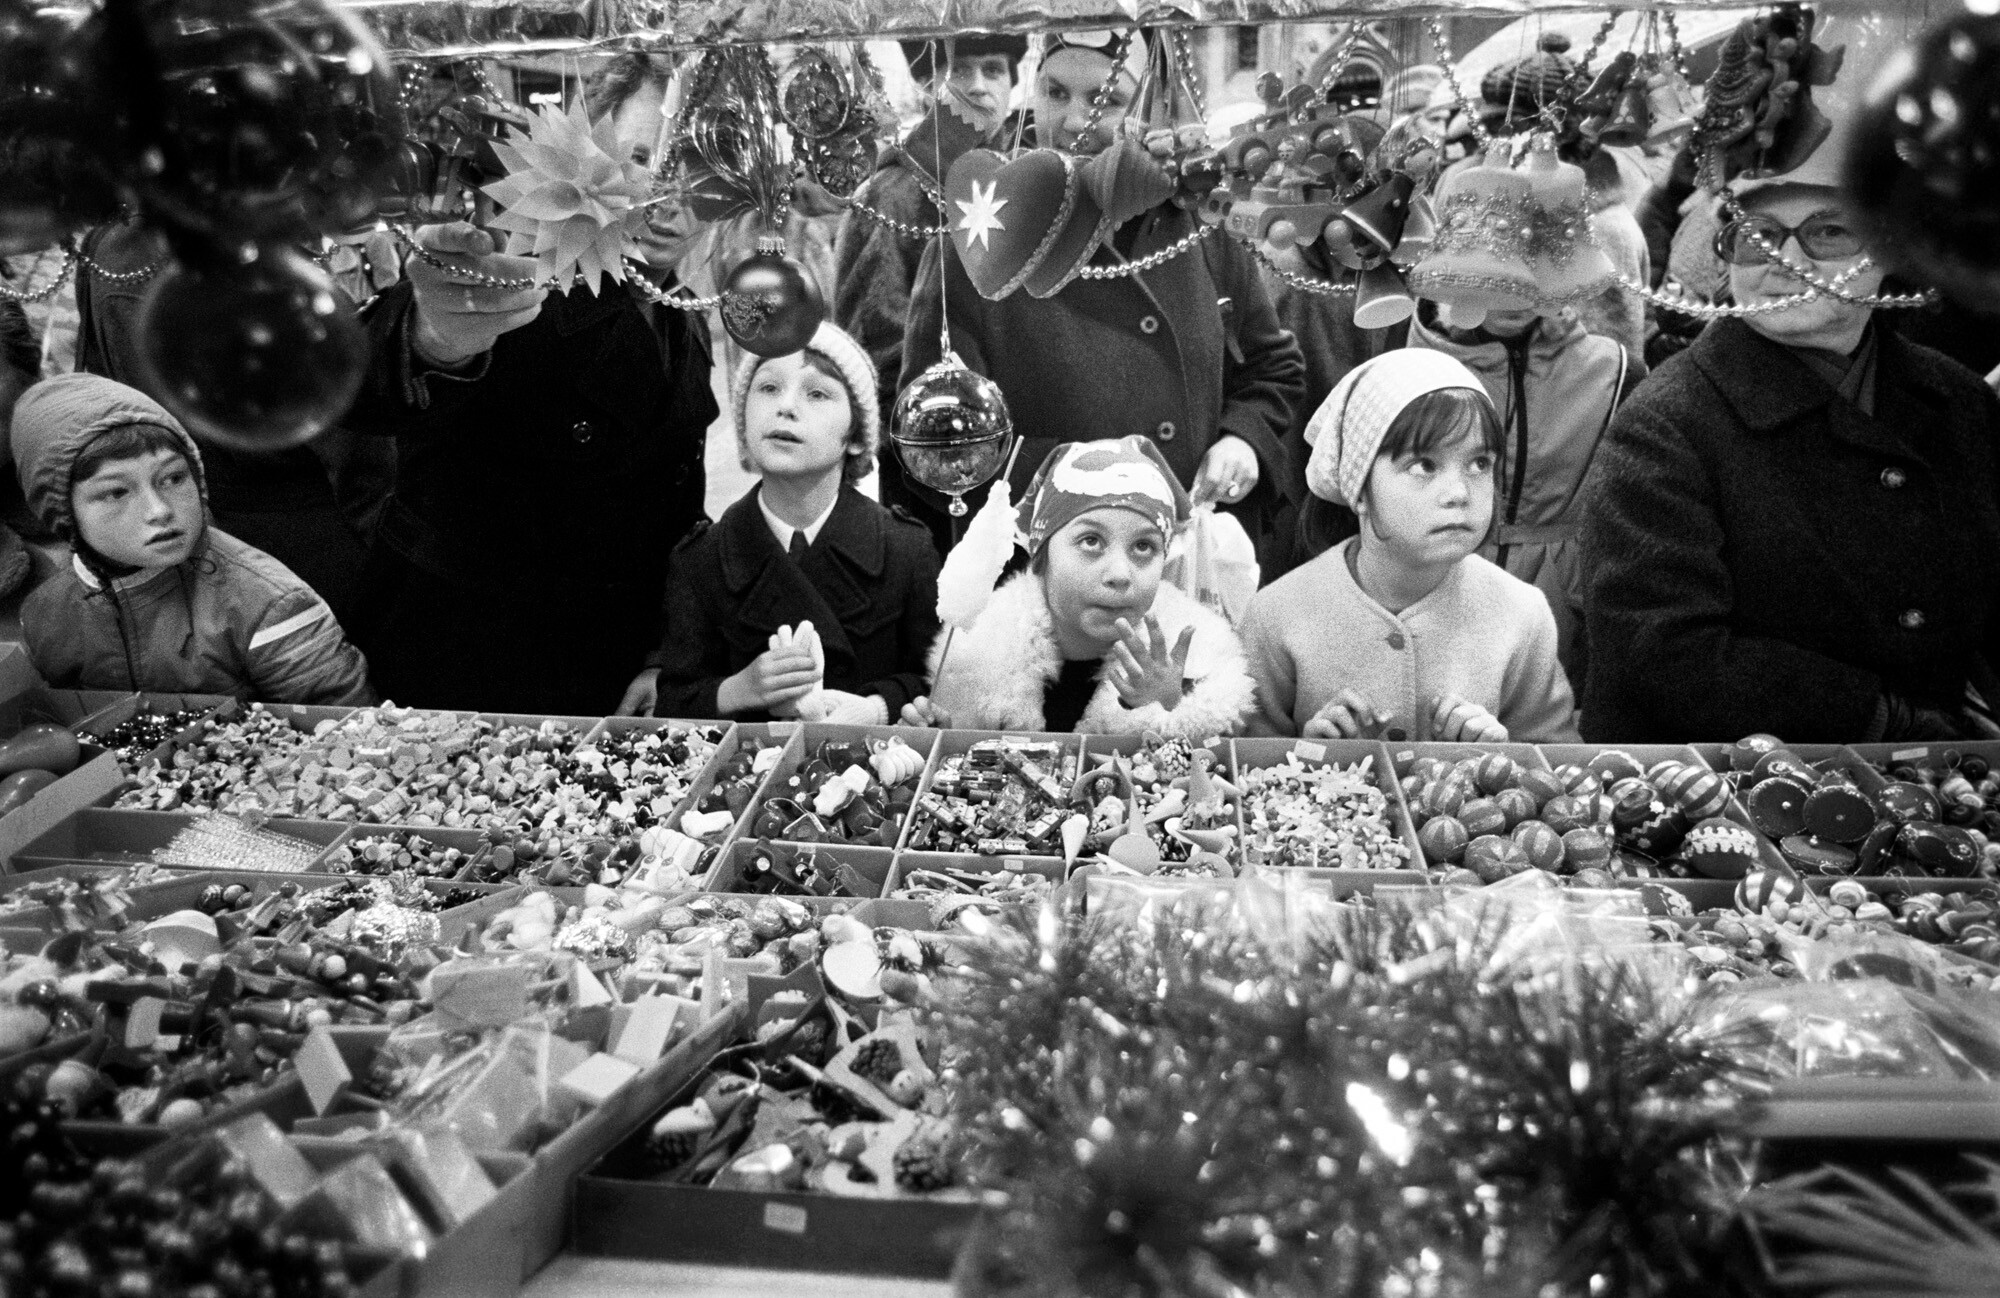 Рождественский рынок, 1972. Фотограф Димитри Сулас 